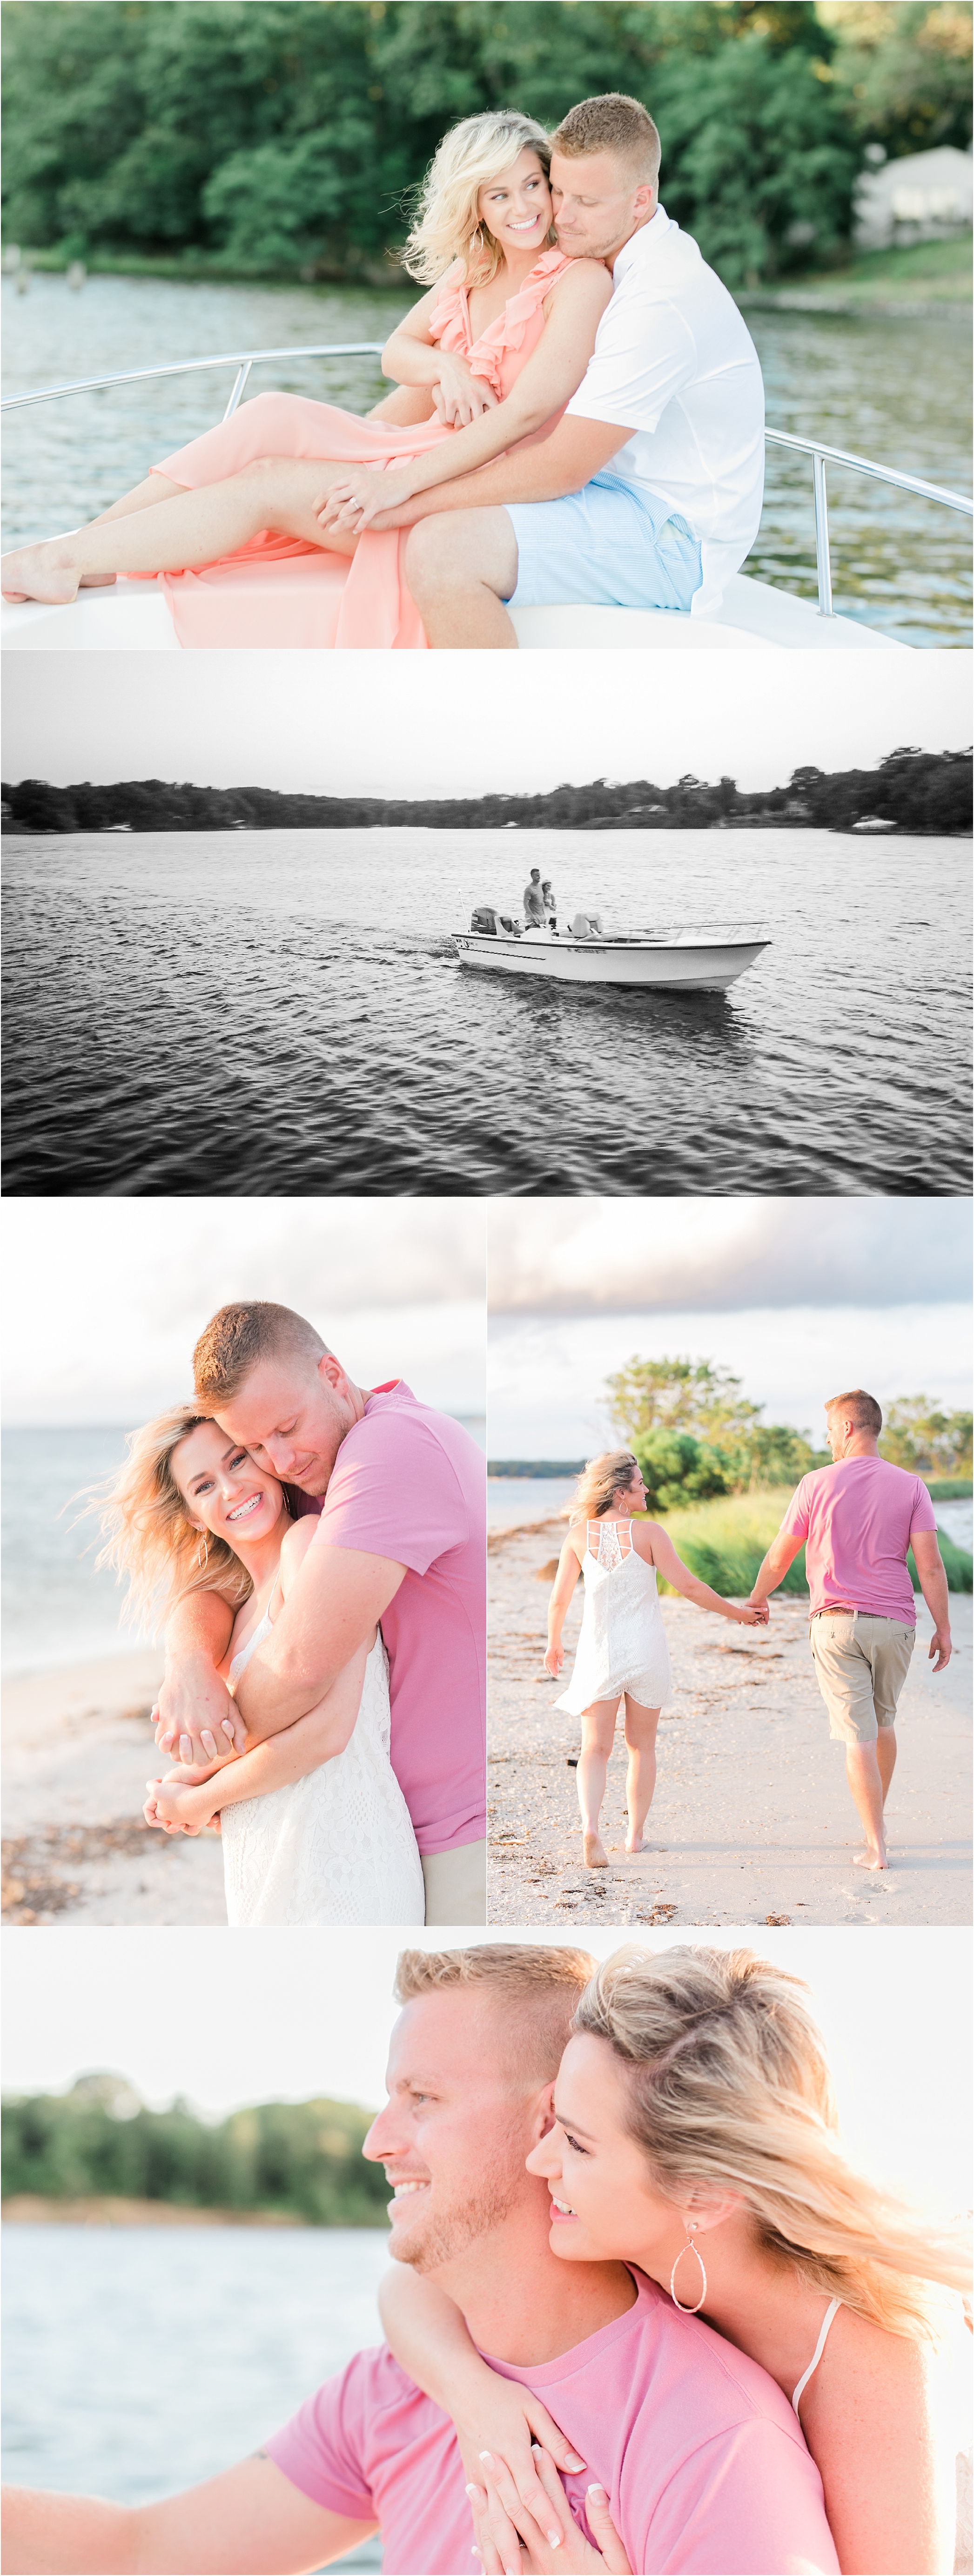 Costola Photography | Maryland Engagement Photographer | Boat Engagement Session